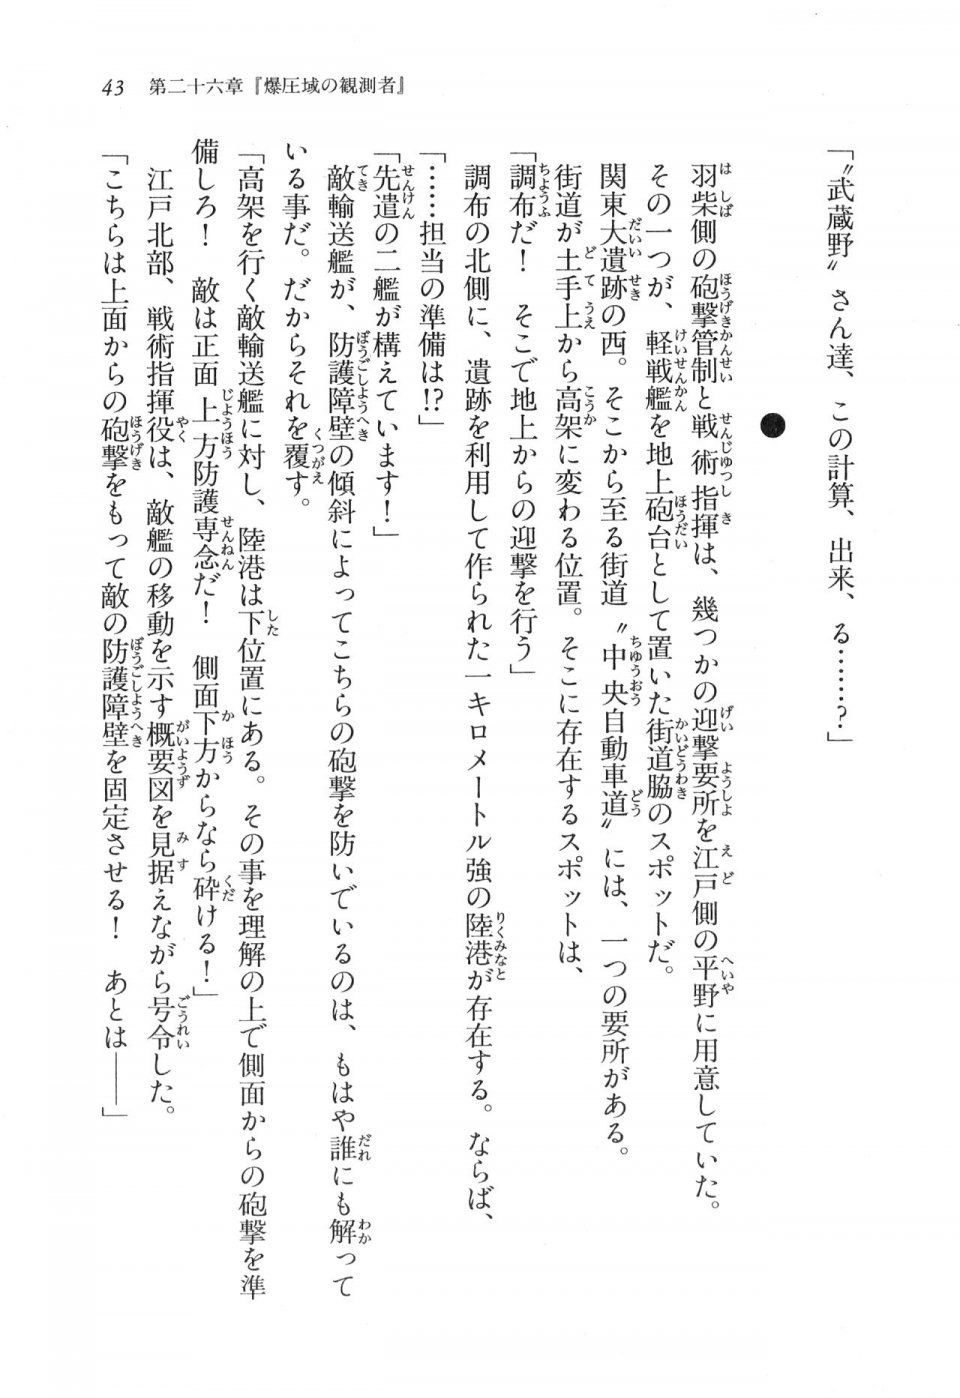 Kyoukai Senjou no Horizon LN Vol 17(7B) - Photo #43